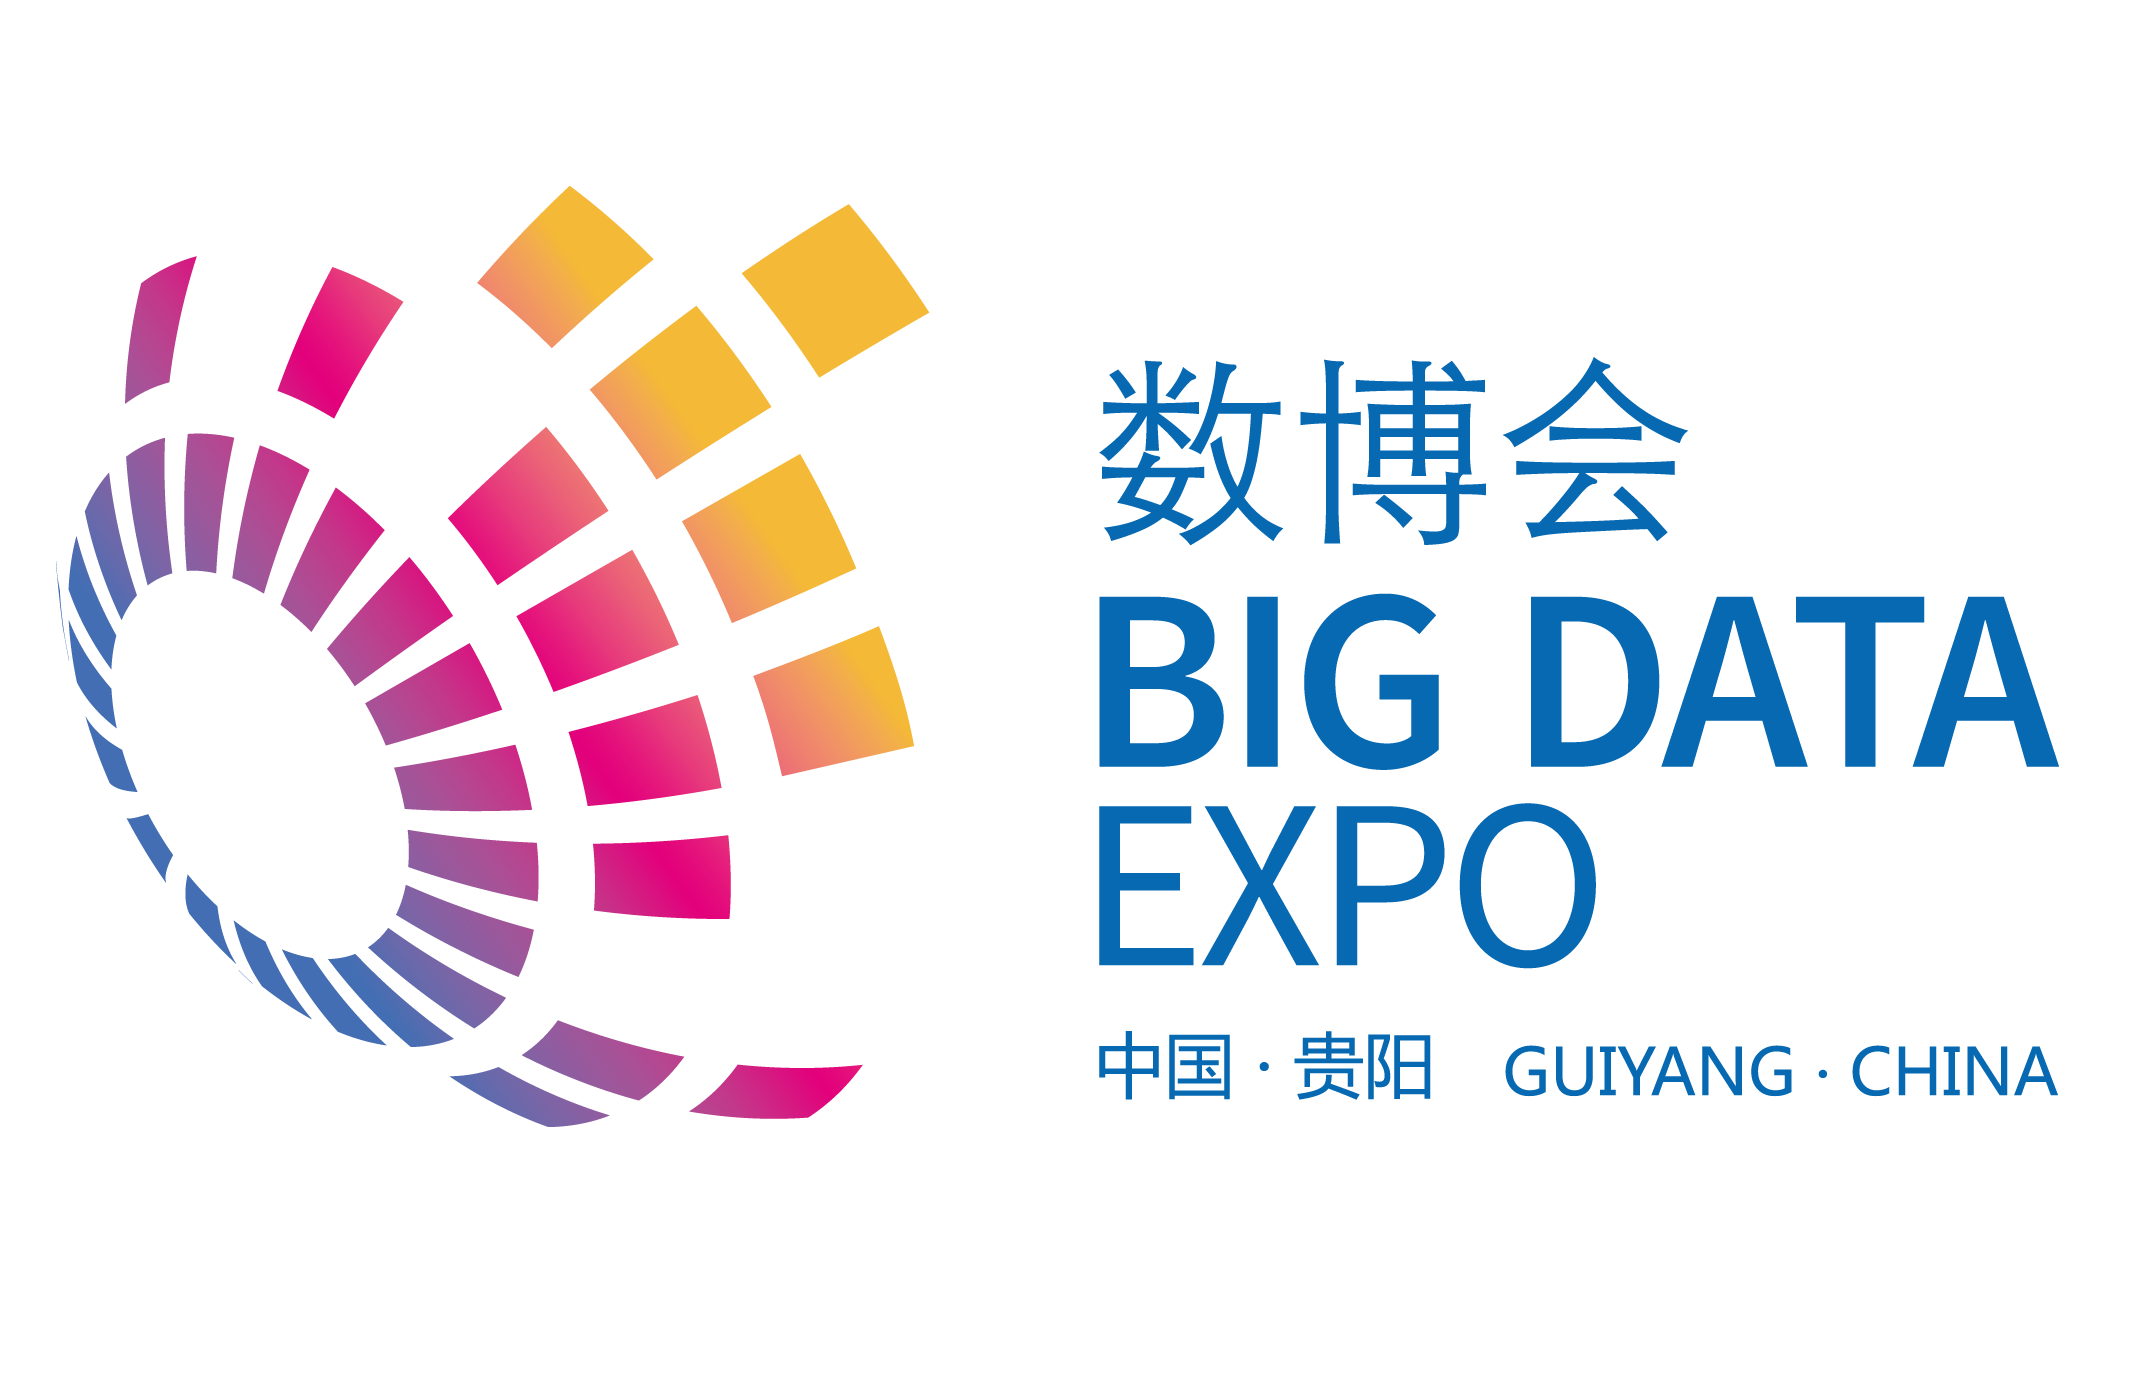 貴陽國際大數據產業博覽會